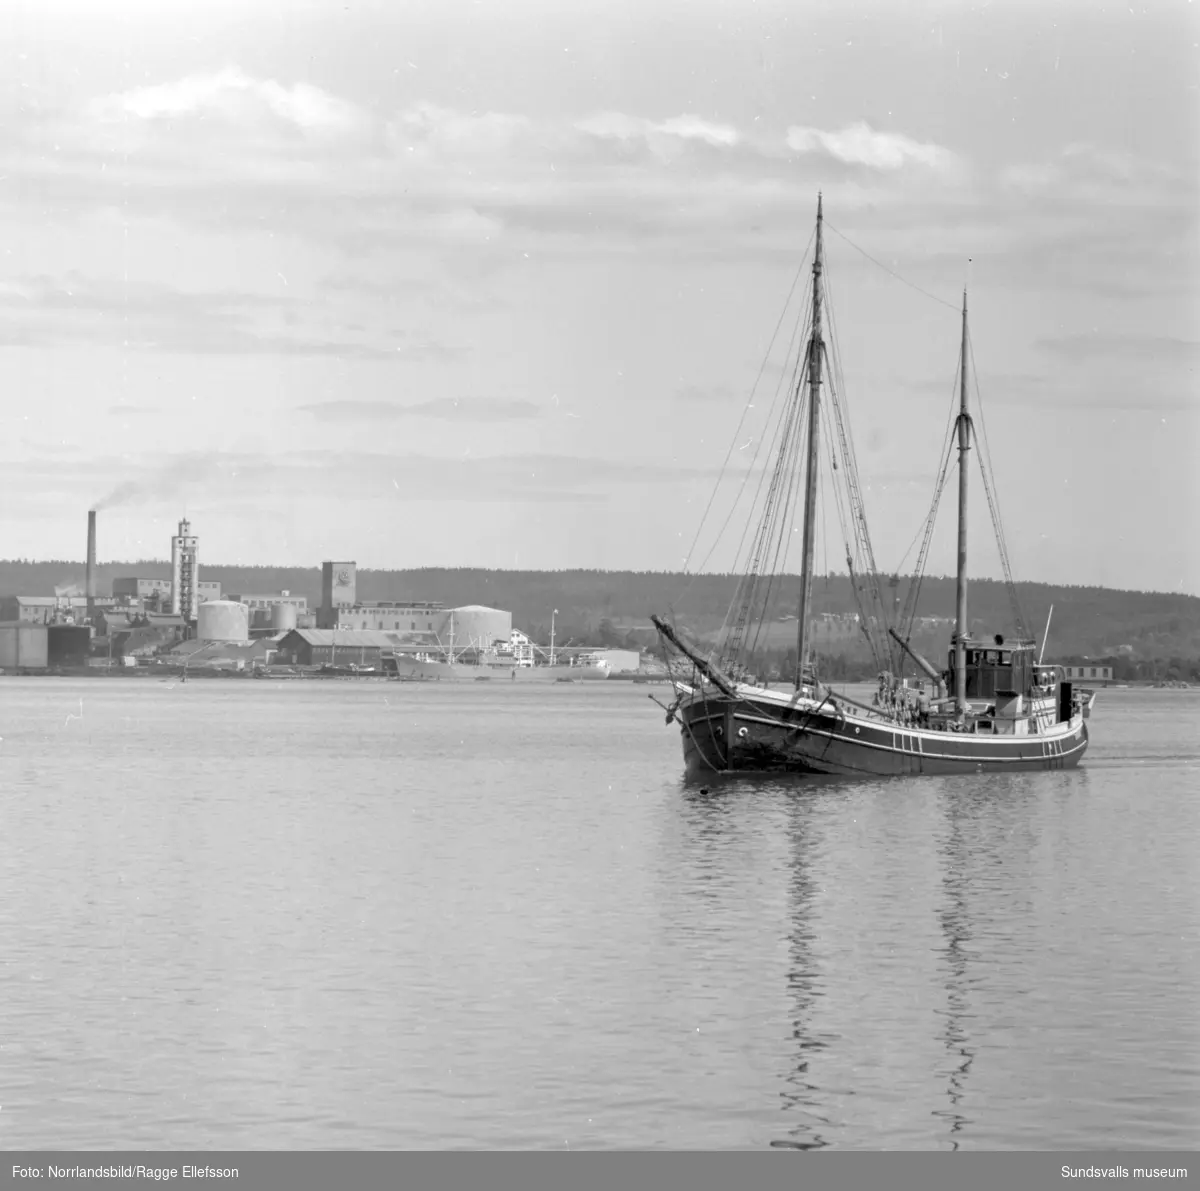 Båtrusch i Sundsvalls ham en midsommarhelg på 1950-talet. Vasaholm, Minnesota, Ragne, Ahoy Kampen, Amazonas.